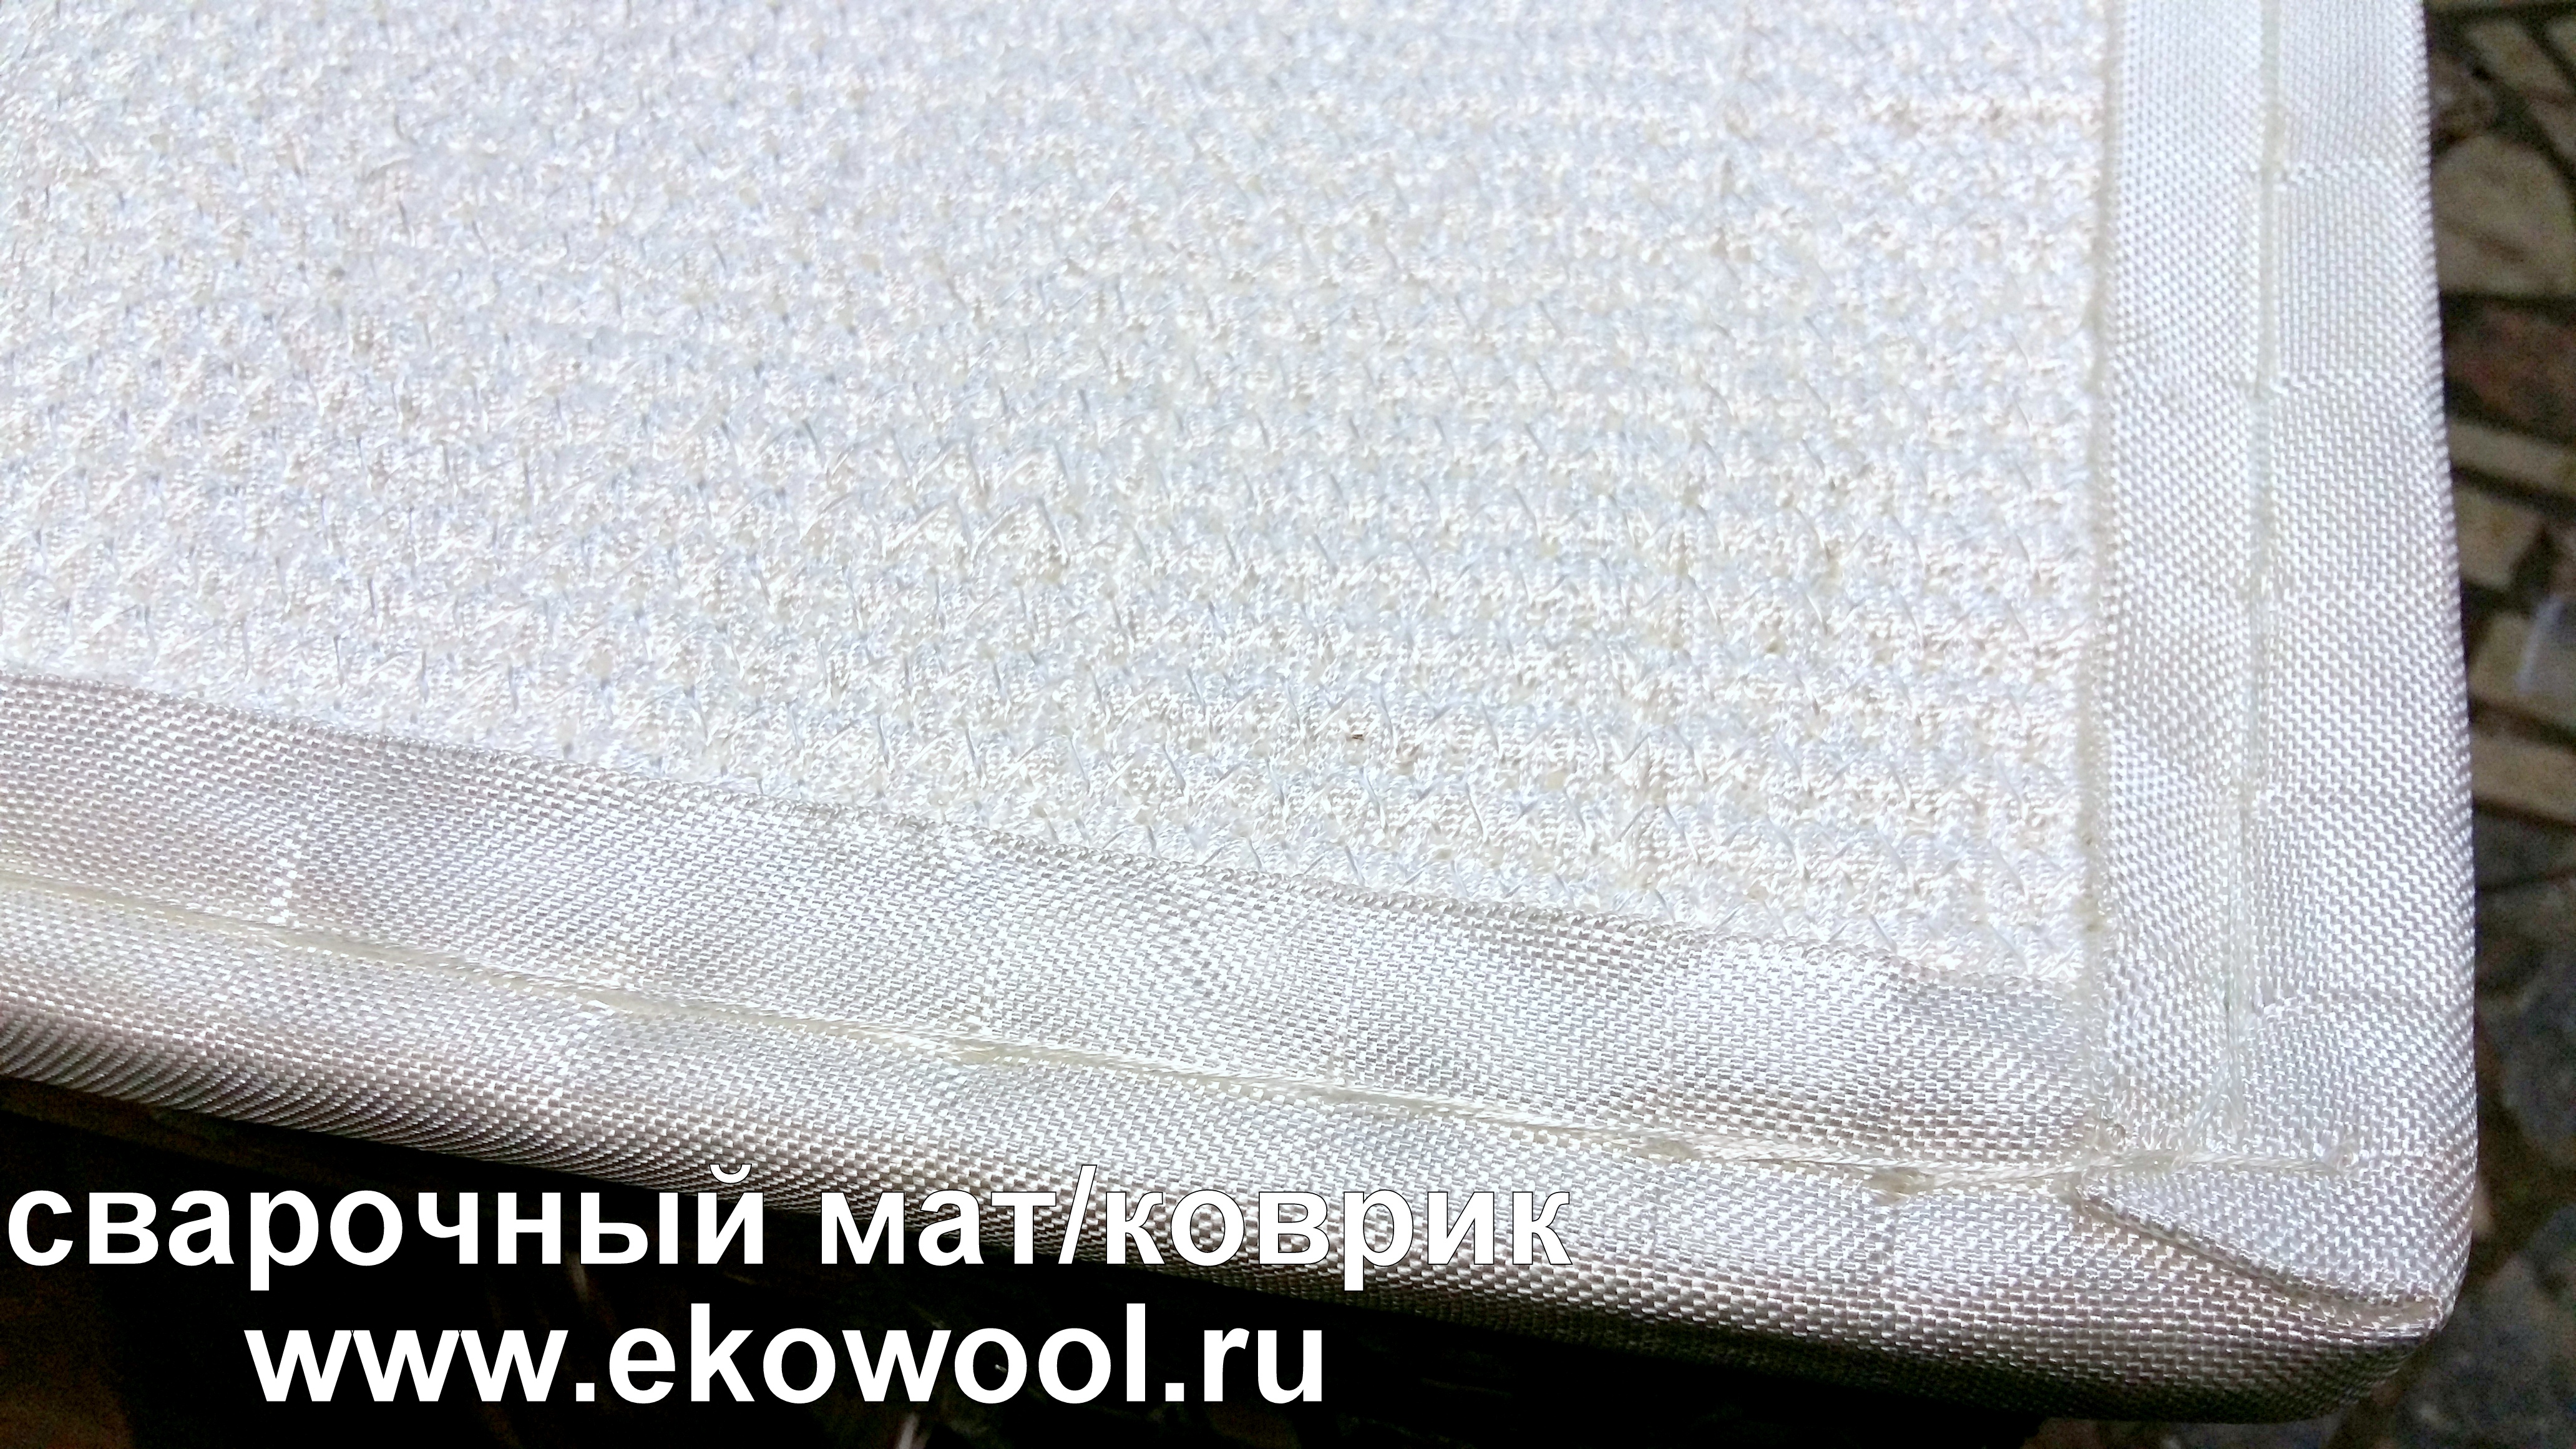 кремнеземный мат эковул суперсил ekowool , коврик для сварщика, сварочное полотно